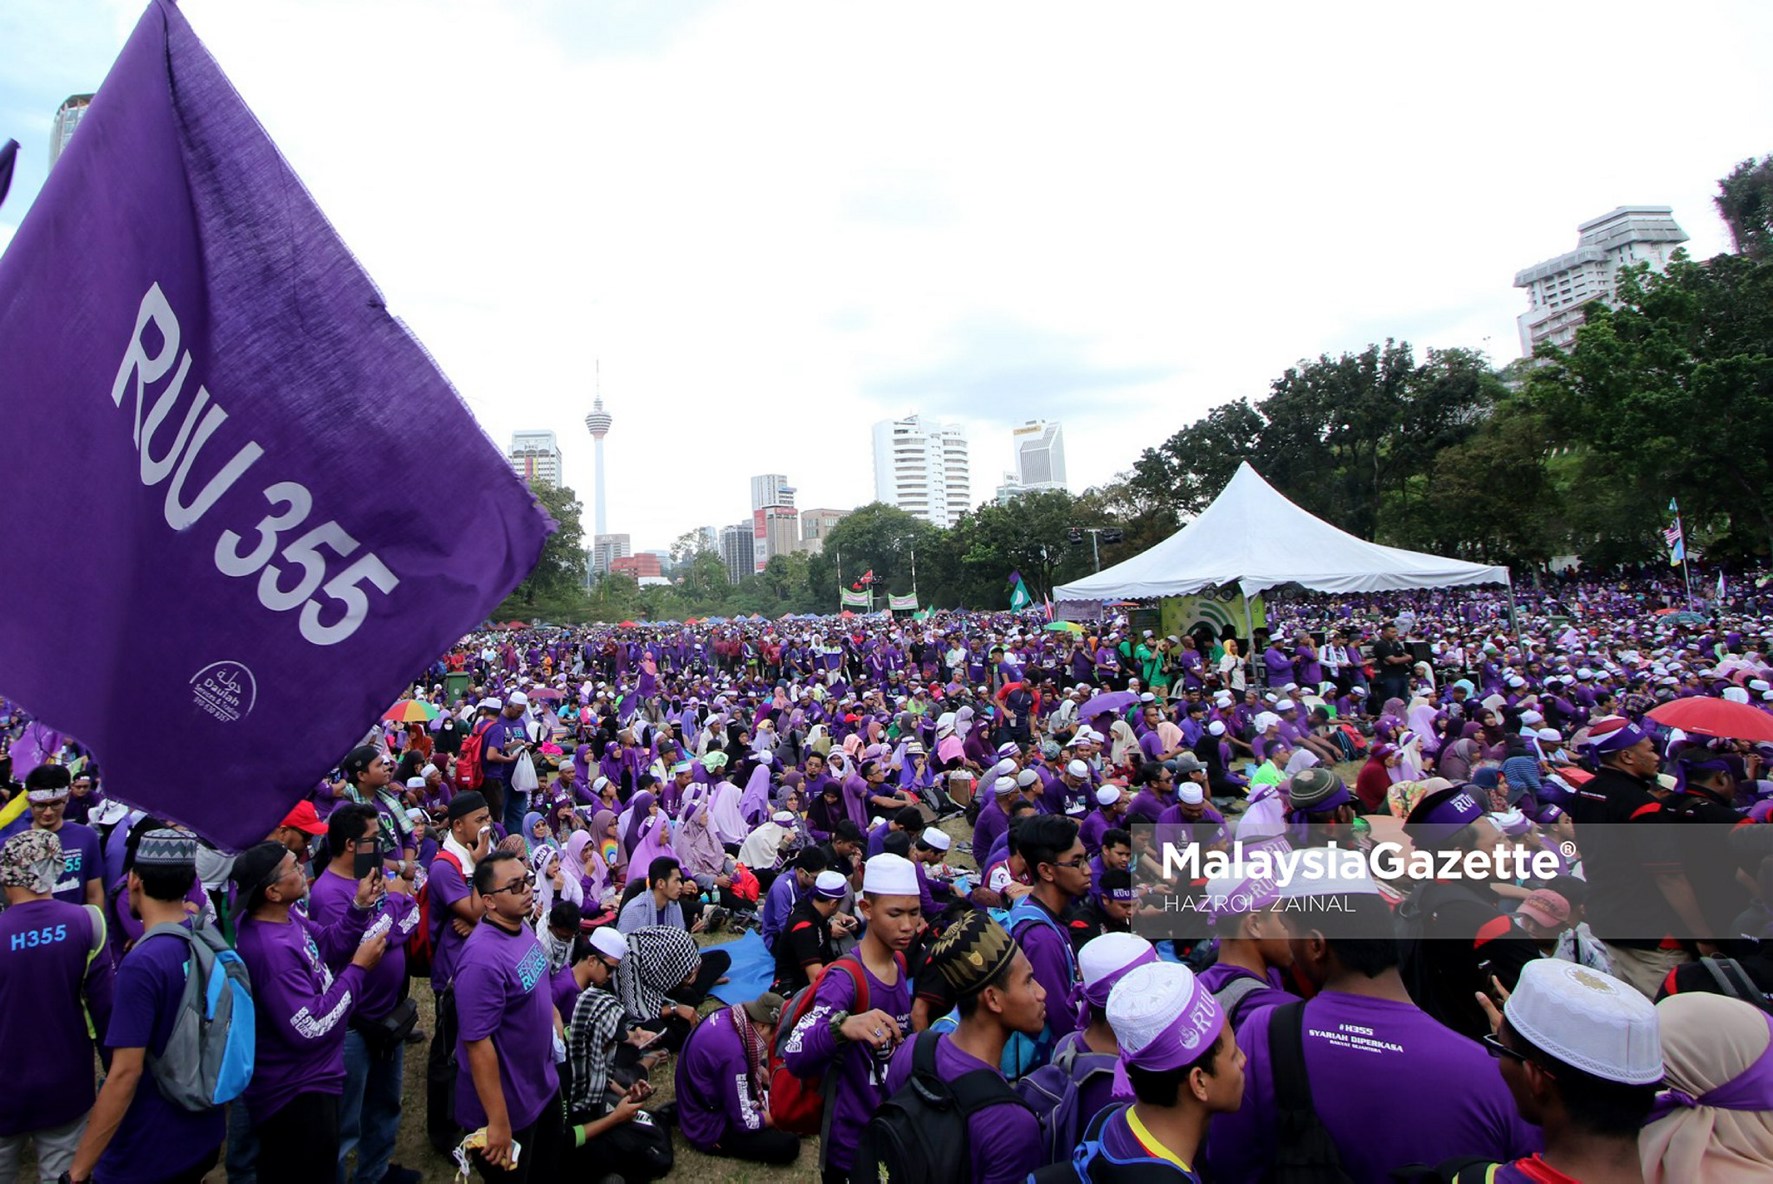 Ribuan penyokong yang hadir pada Himpunan RUU 355 di Padang Merbok, Kuala Lumpur. foto MOHD HAZROL ZAINAL, 18 FEBRUARI 2017.